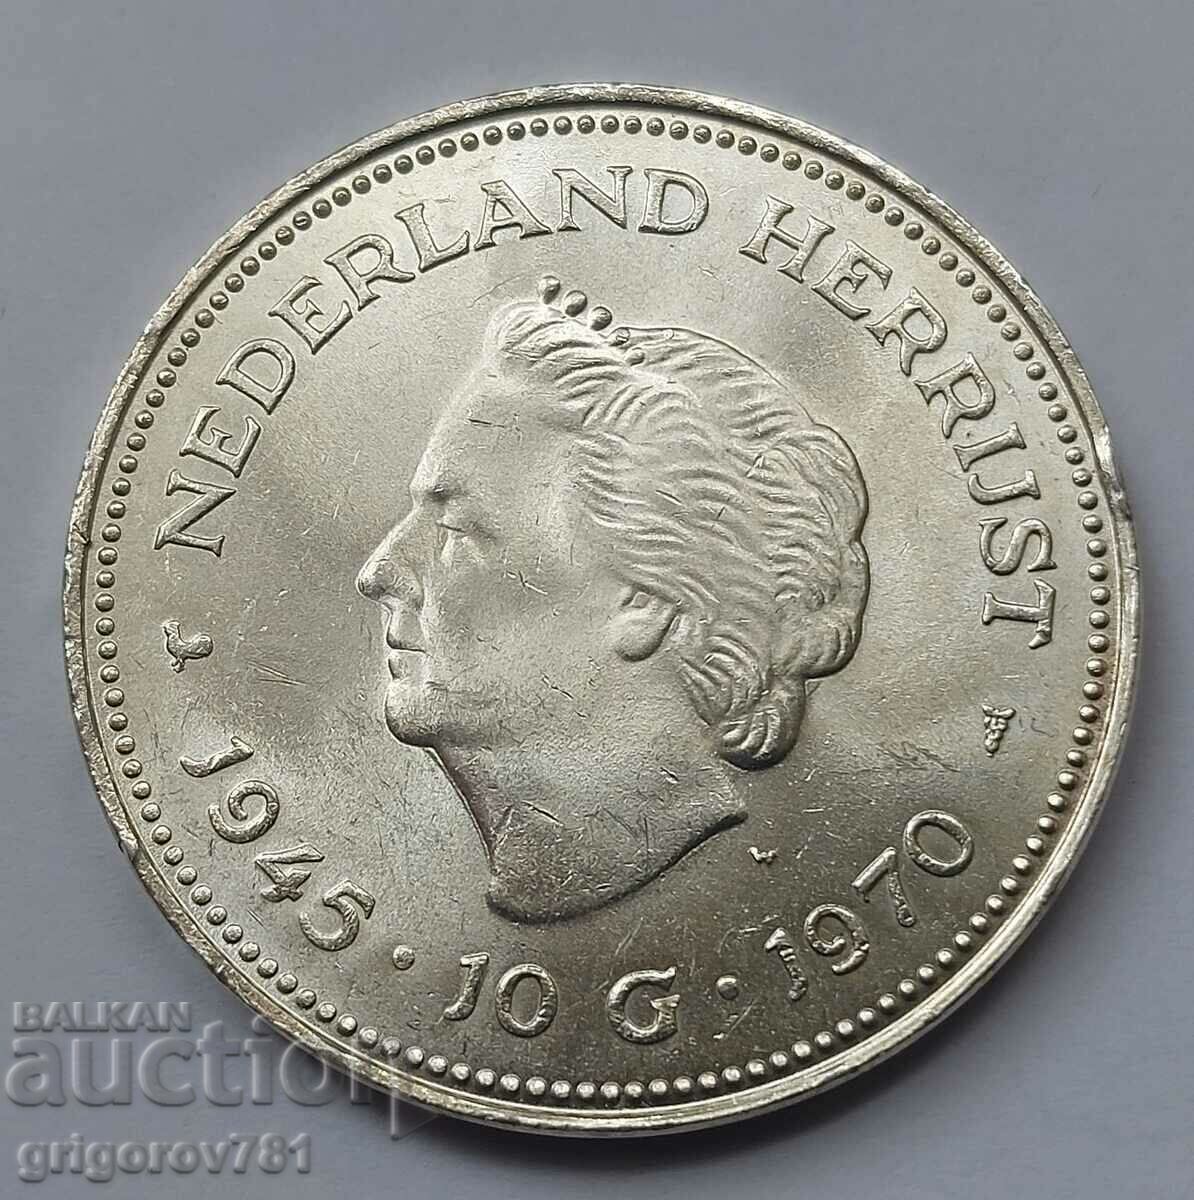 10 guldeni de argint Olanda 1970 - Moneda de argint #4